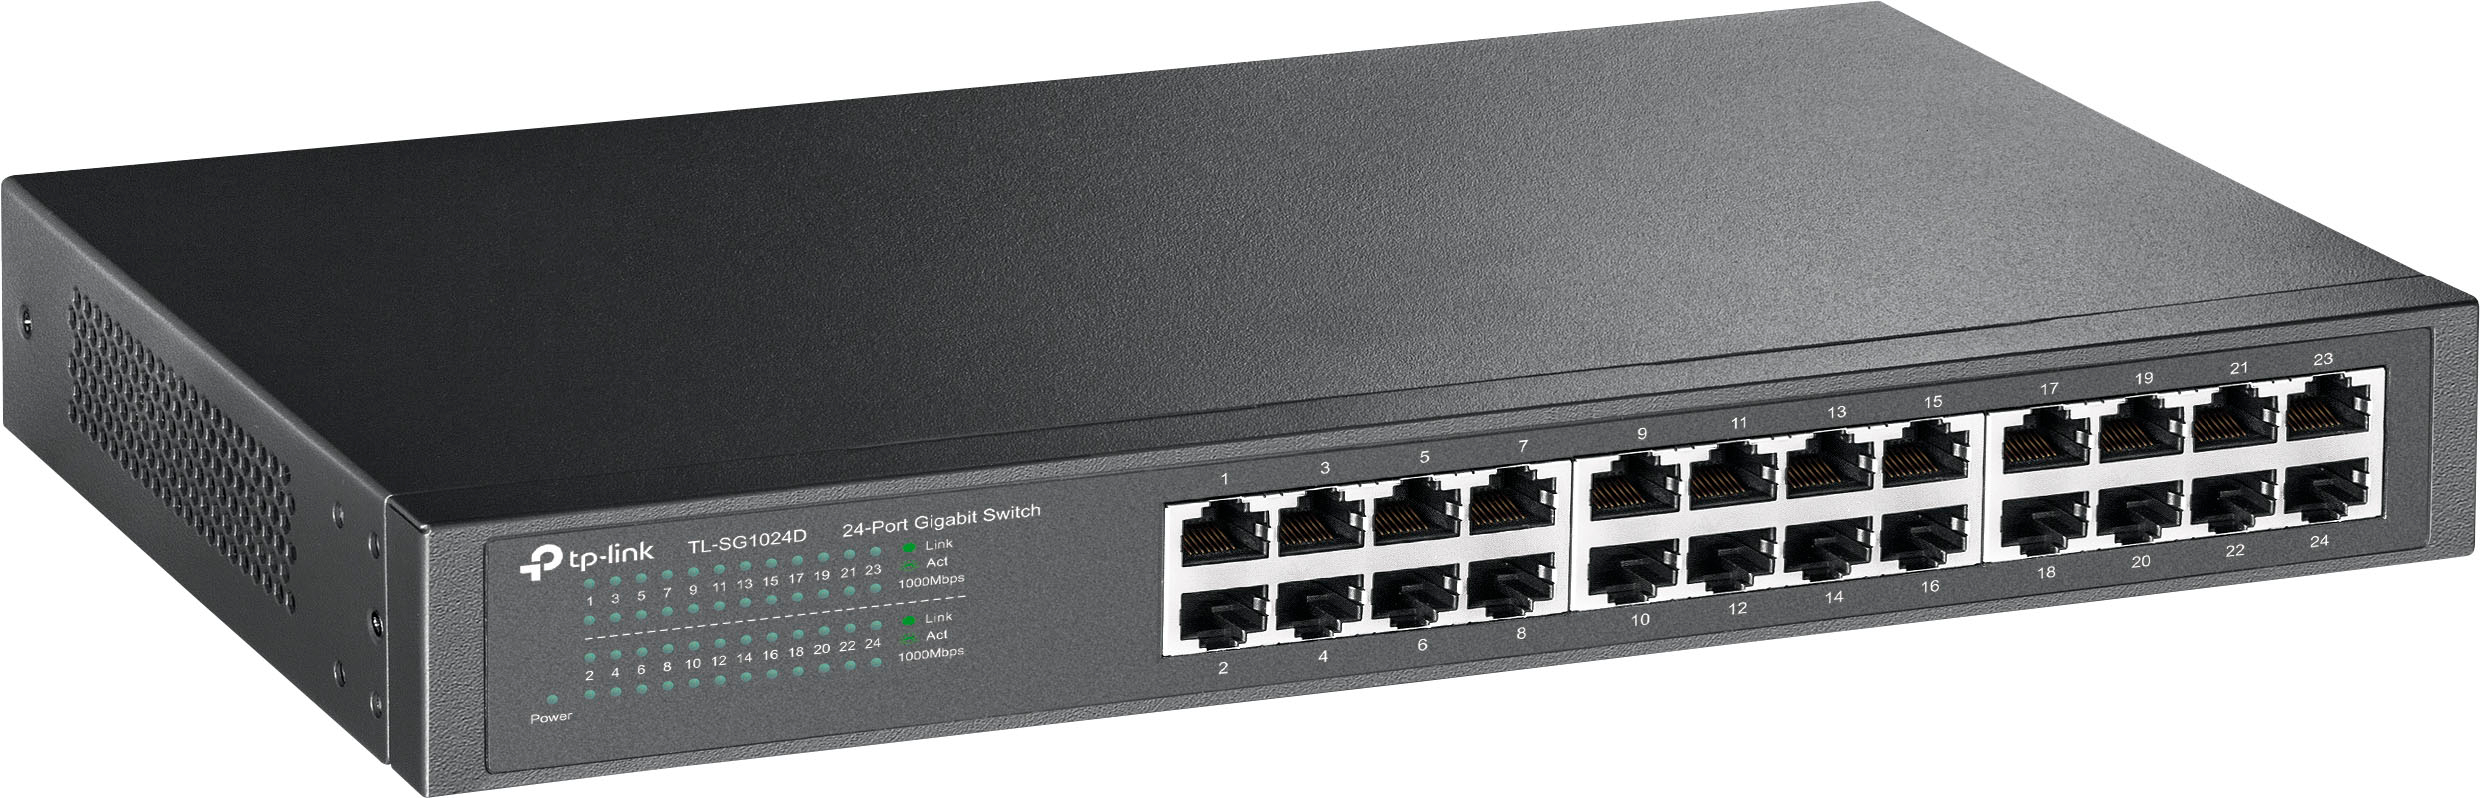 TP-Link TL-SG1024D 1000Mbps Rackmount 24-Port Gigabit Network Switch